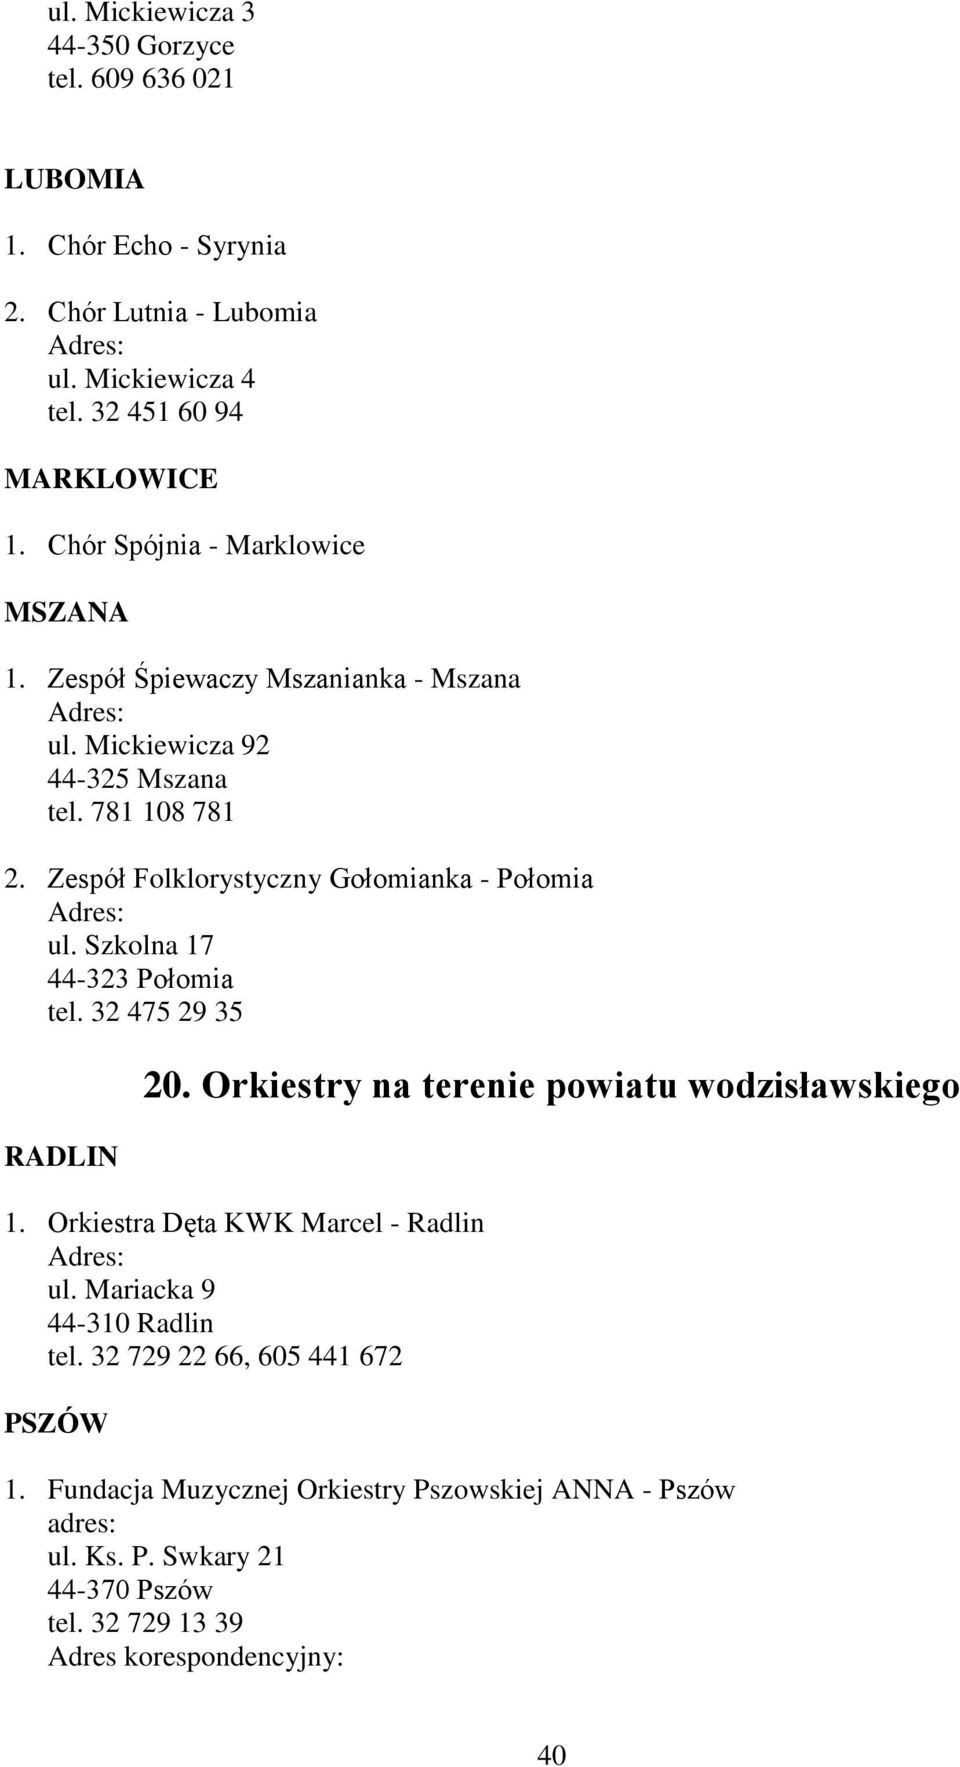 Zespół Folklorystyczny Gołomianka - Połomia ul. Szkolna 17 44-323 Połomia tel. 32 475 29 35 RADLIN 20. Orkiestry na terenie powiatu wodzisławskiego 1.